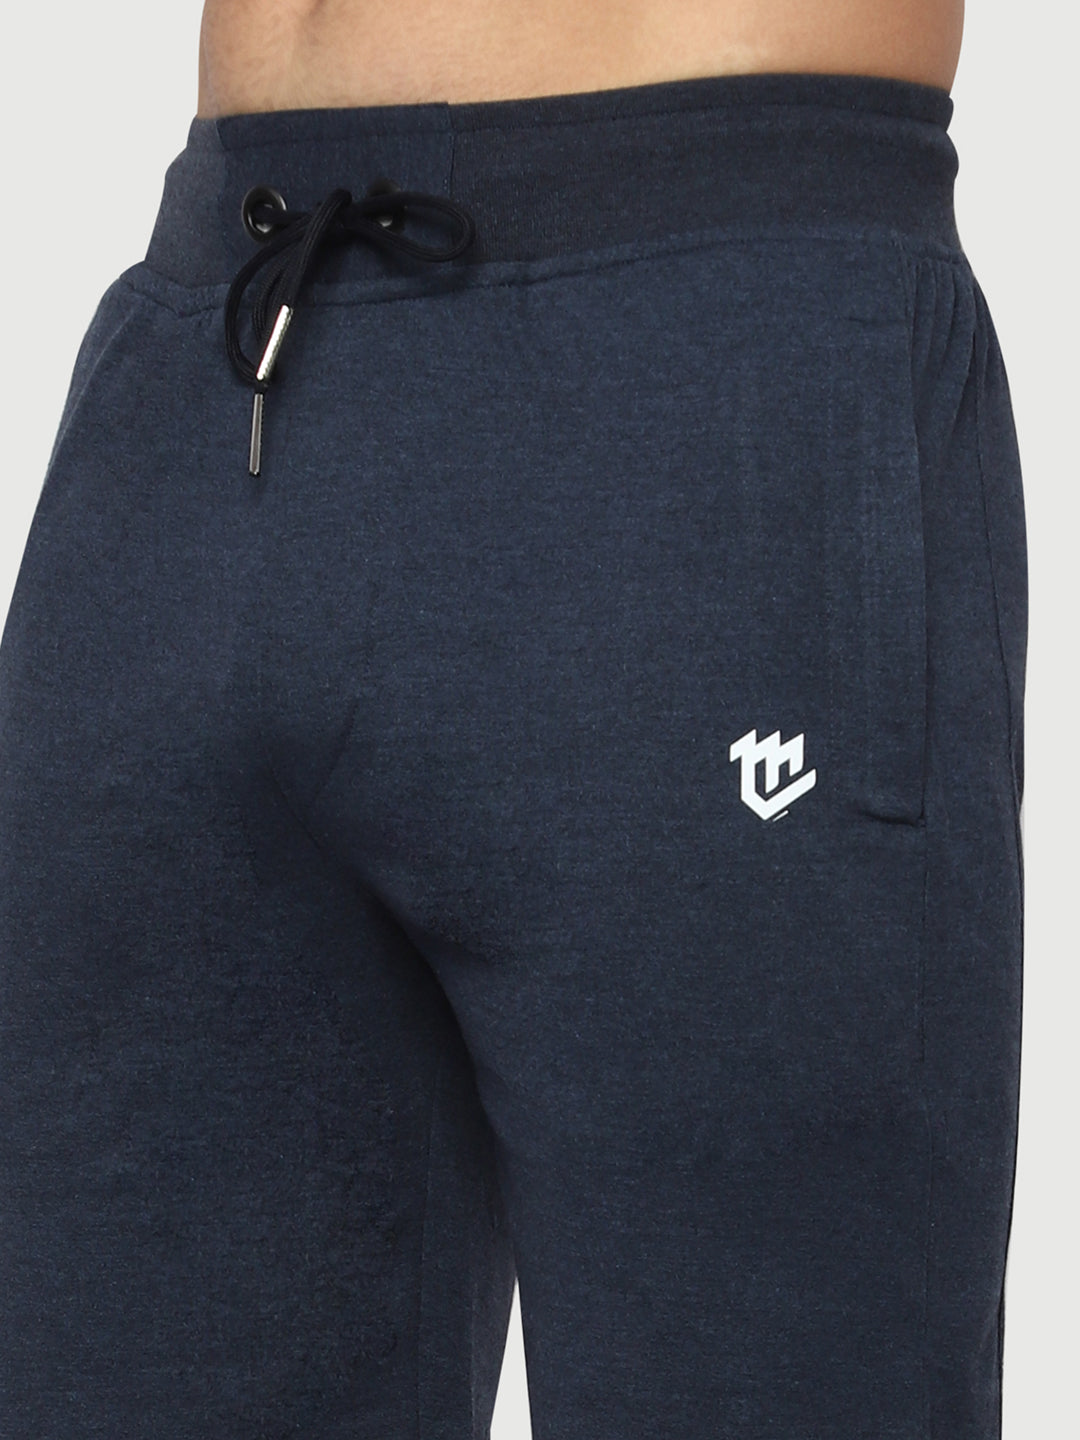 Mark Leute Melange Blue Shorts For Men.